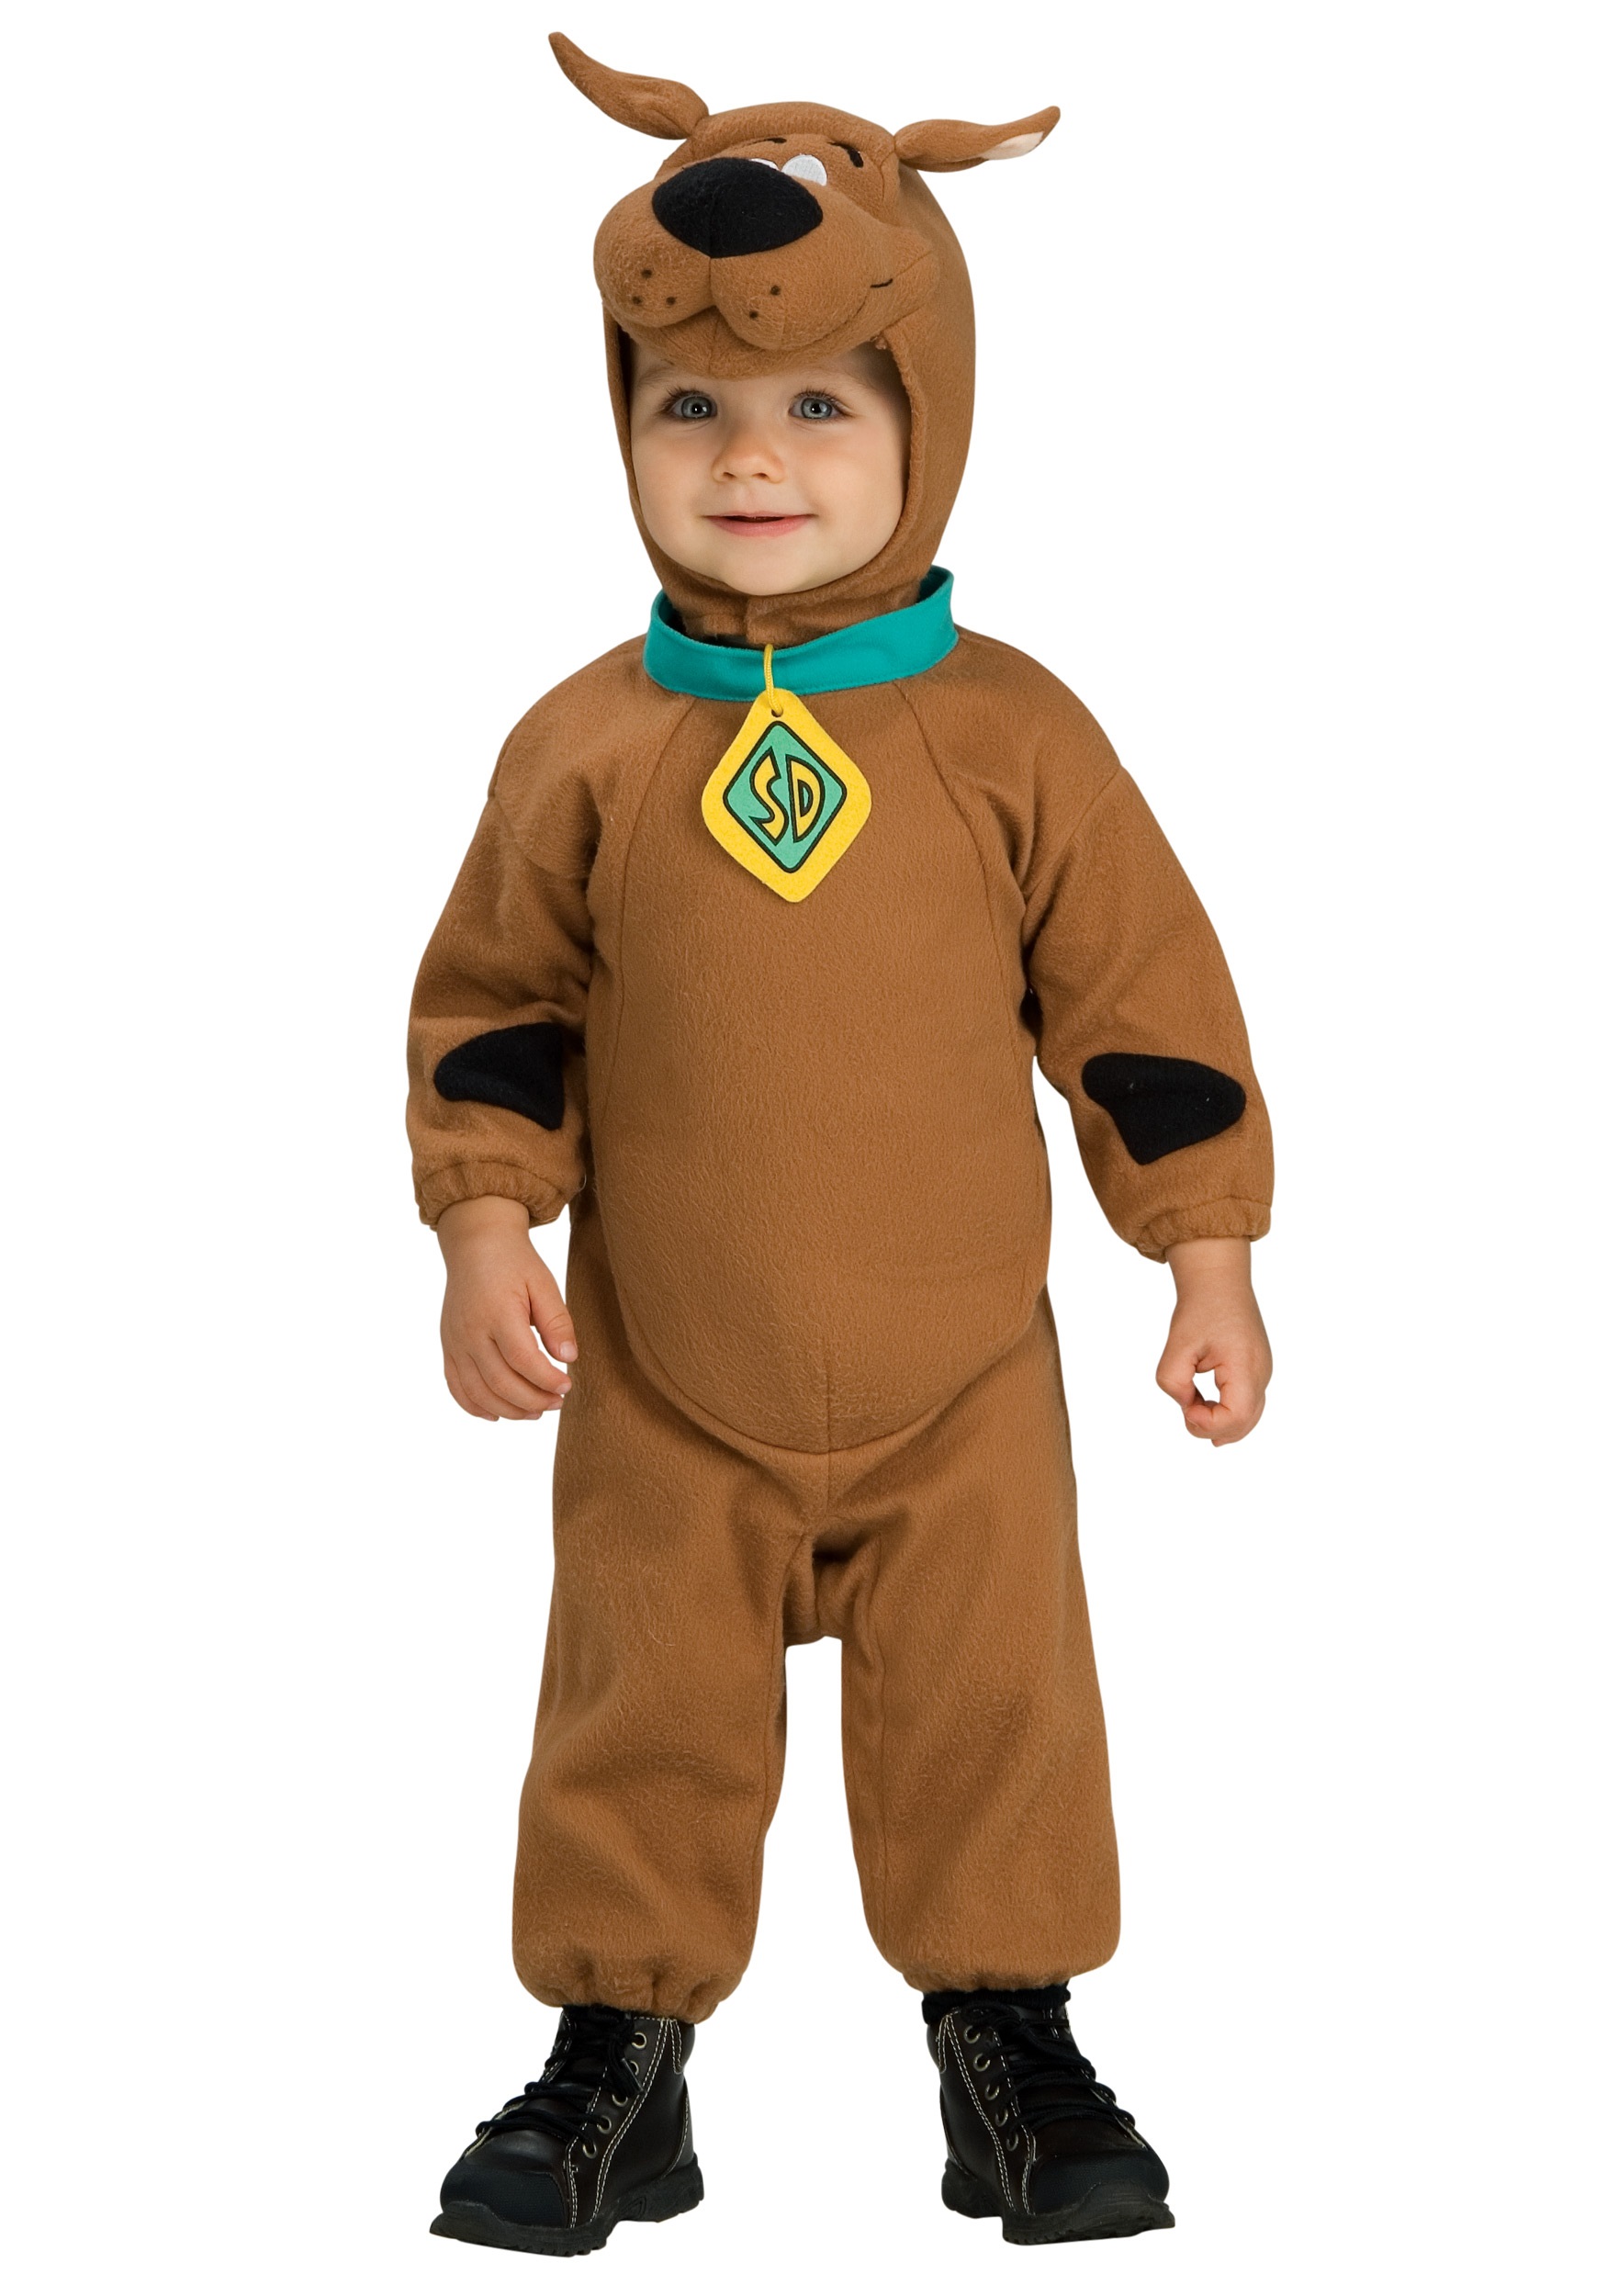 Deluxe Scooby Doo Costume. 